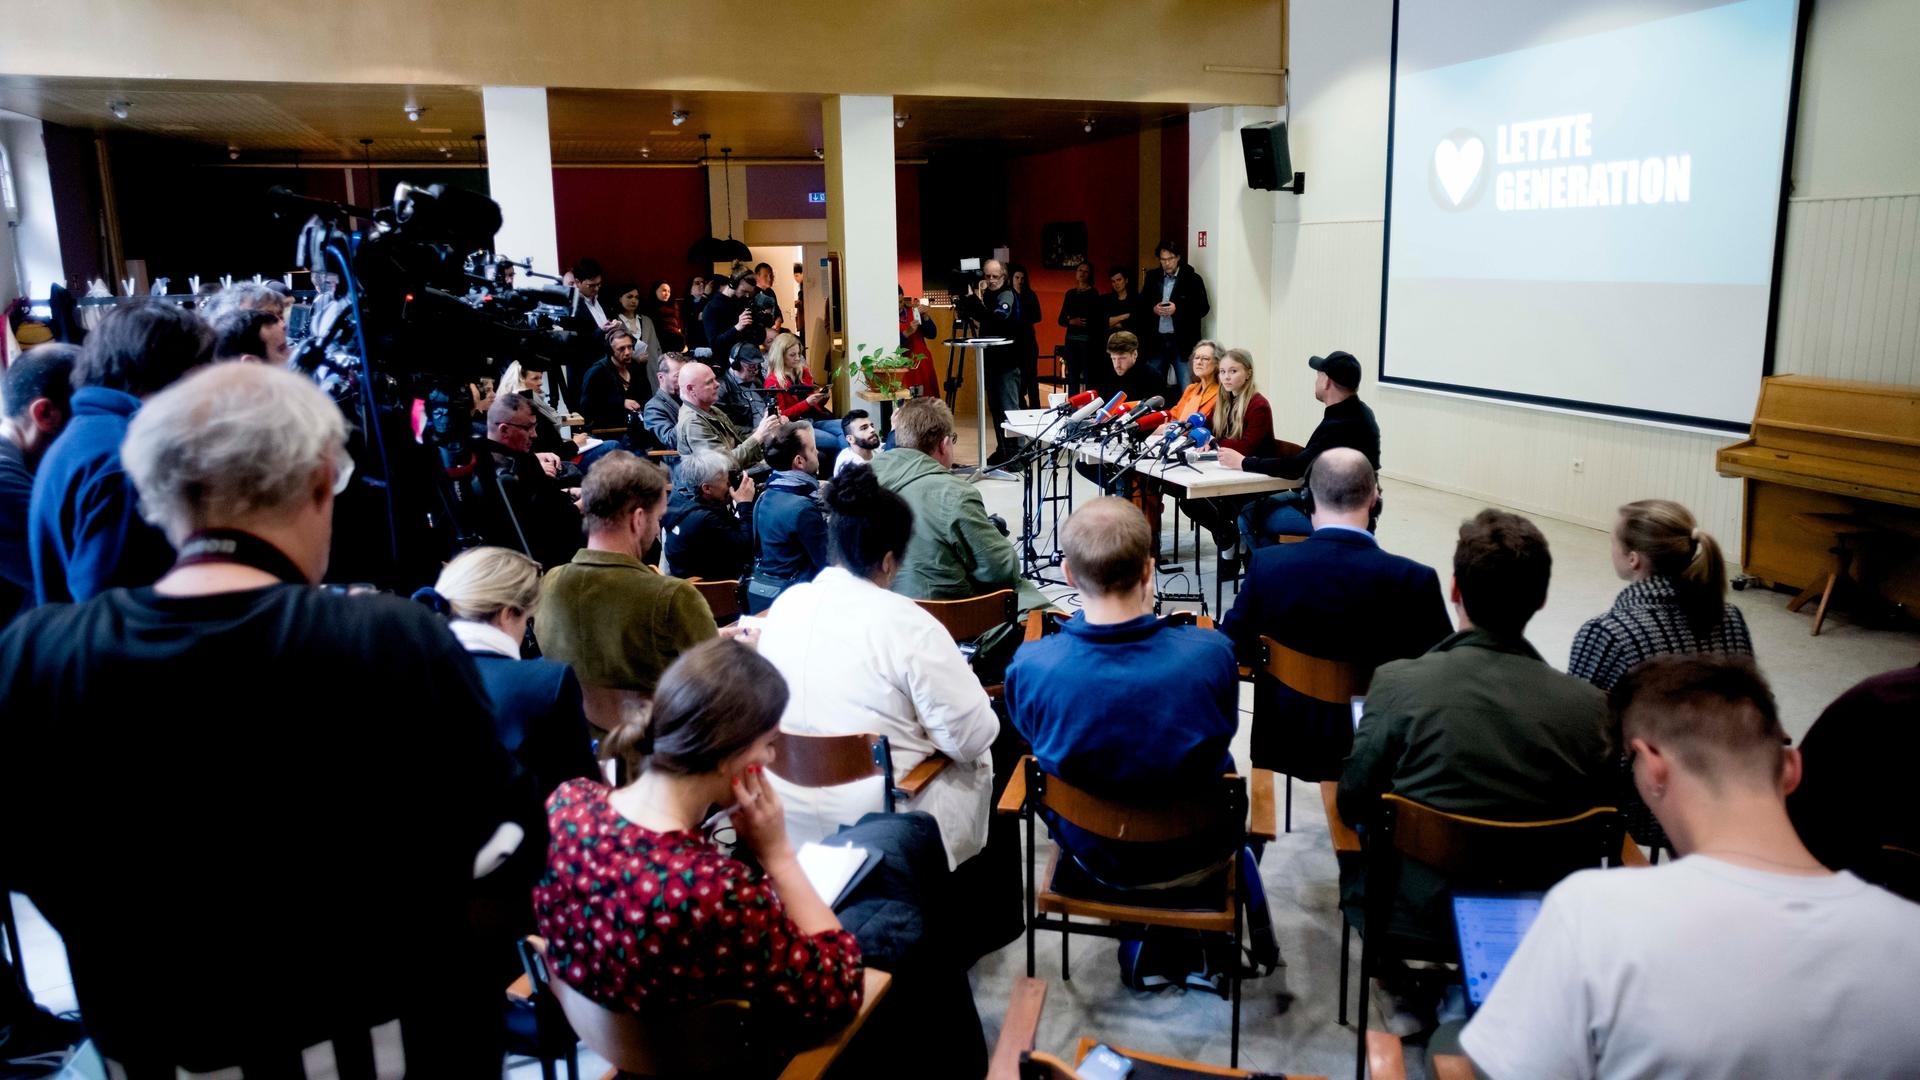 Journalisten und Mitglieder der "Letzten Generation" sitzen bei einer Pressekonferenz.